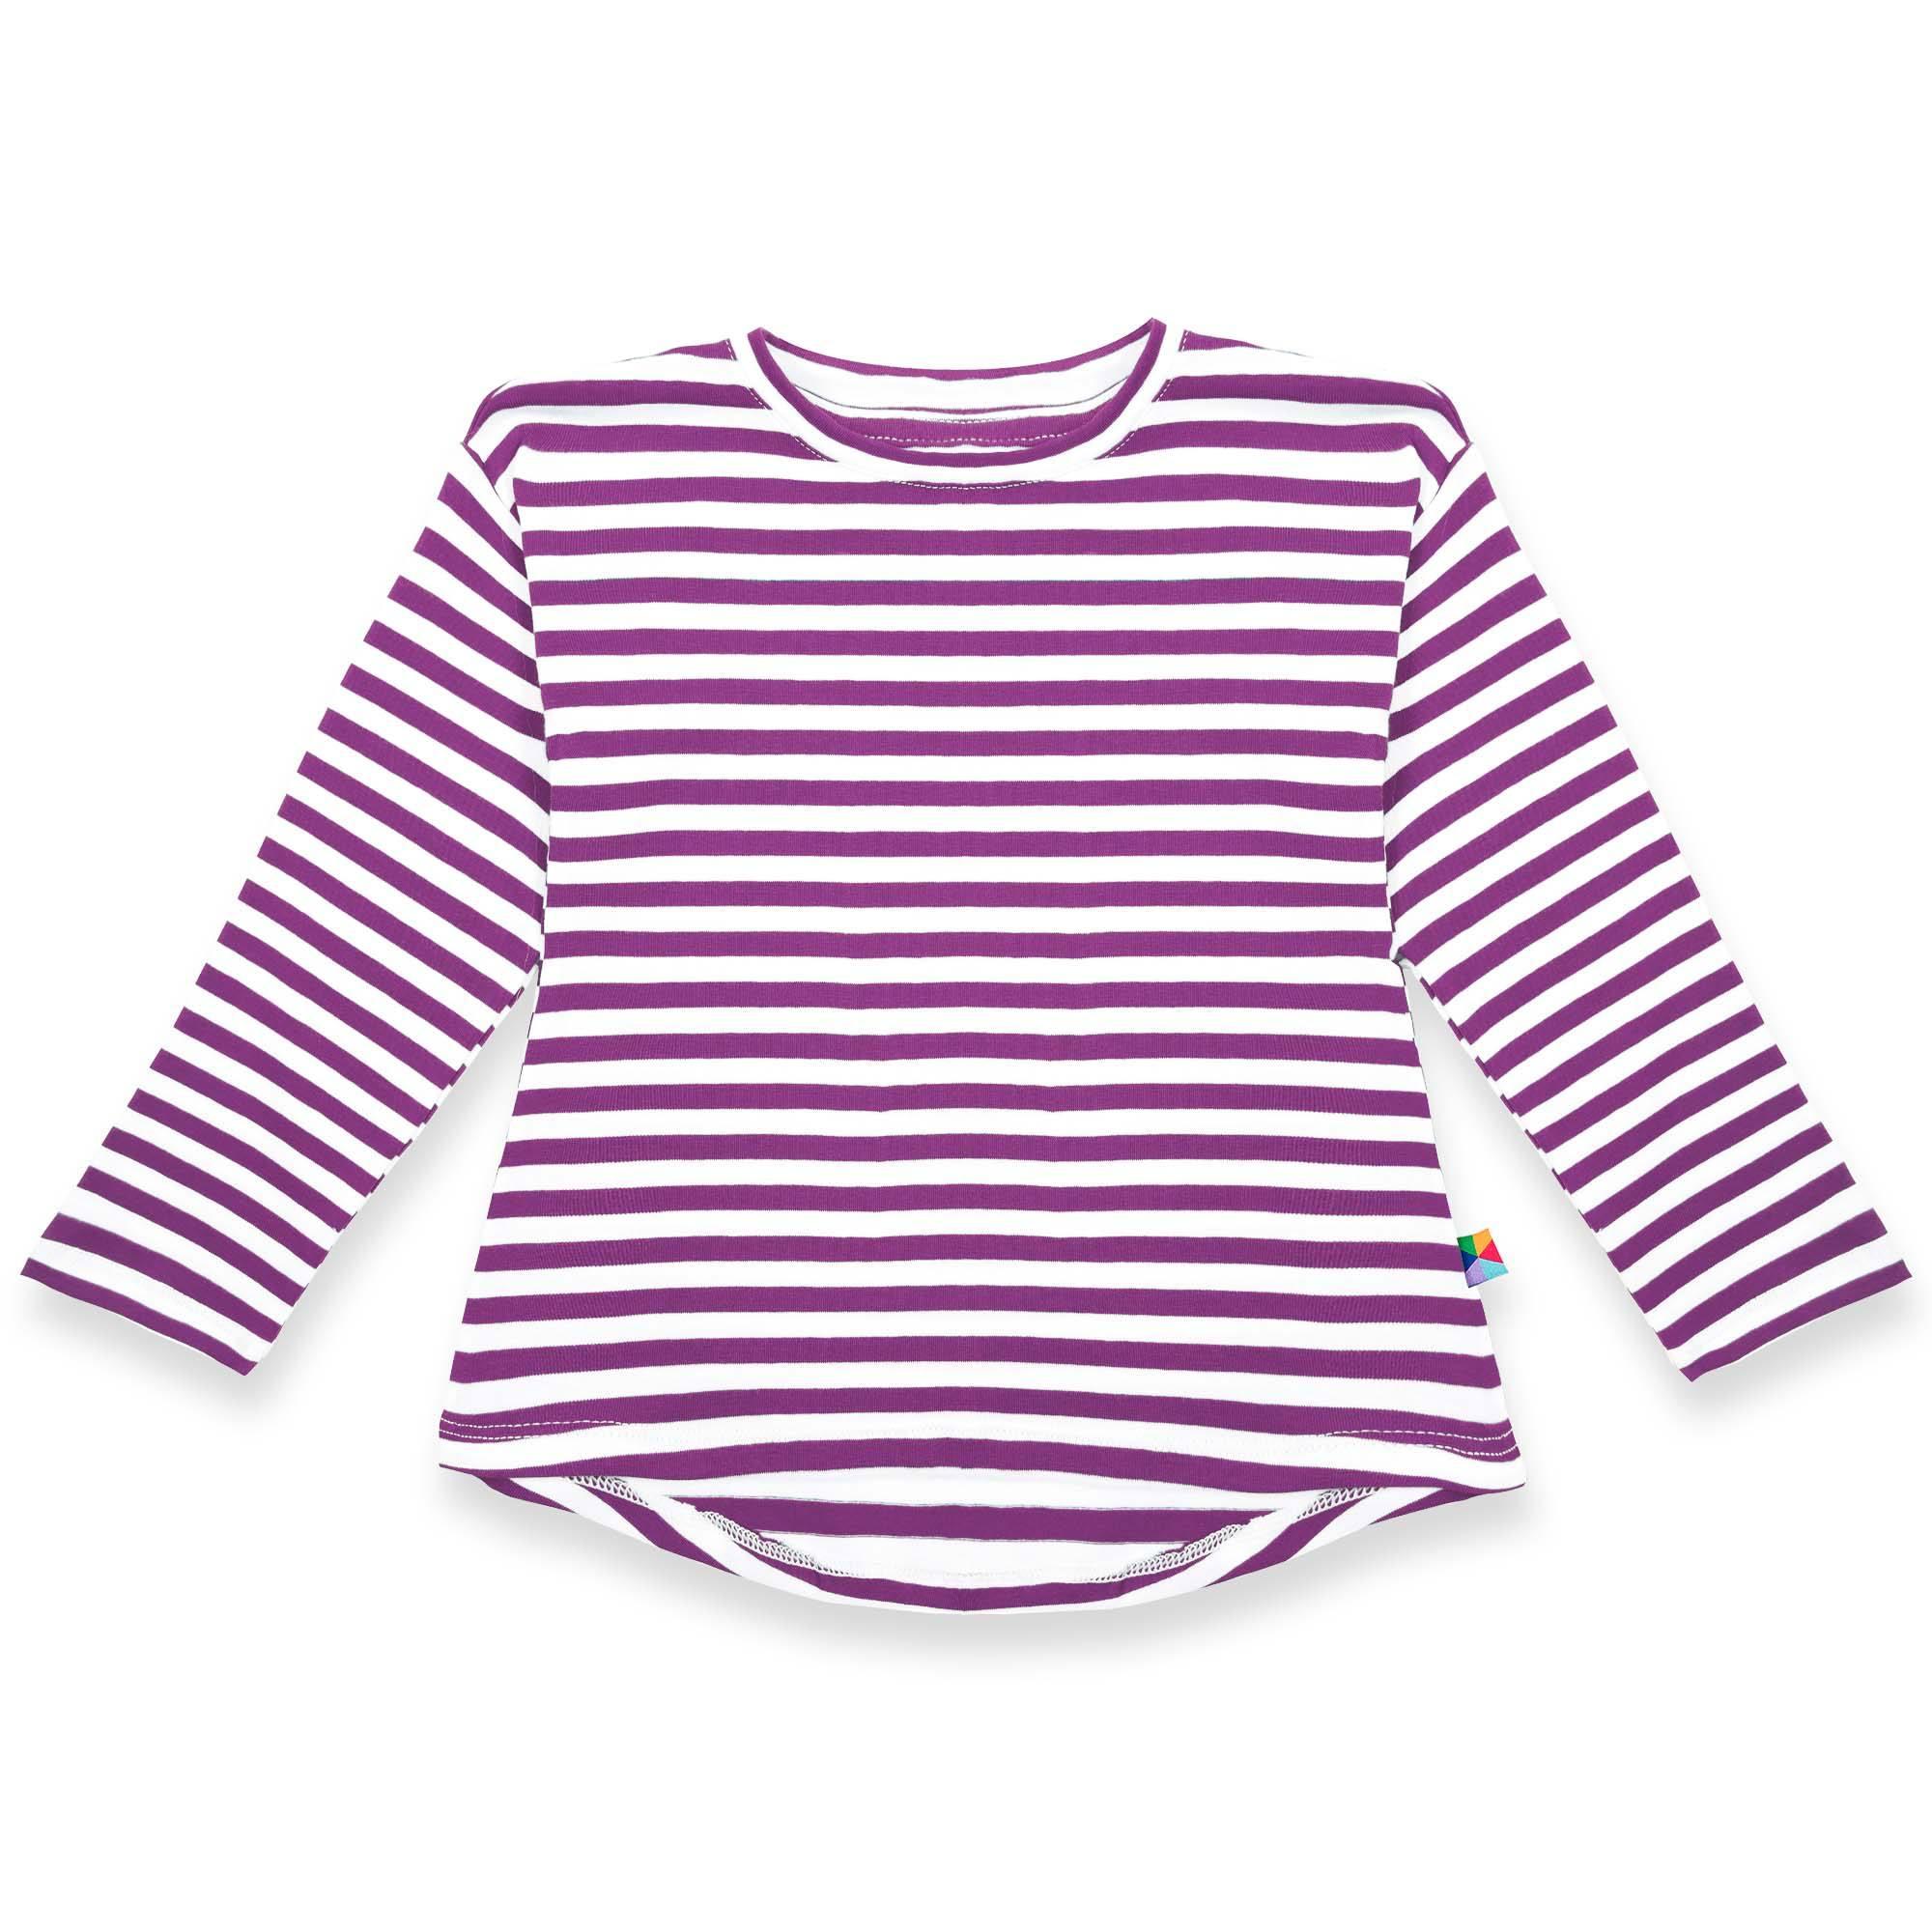 Fioletowa koszulka z przedłużanym tyłem w paski